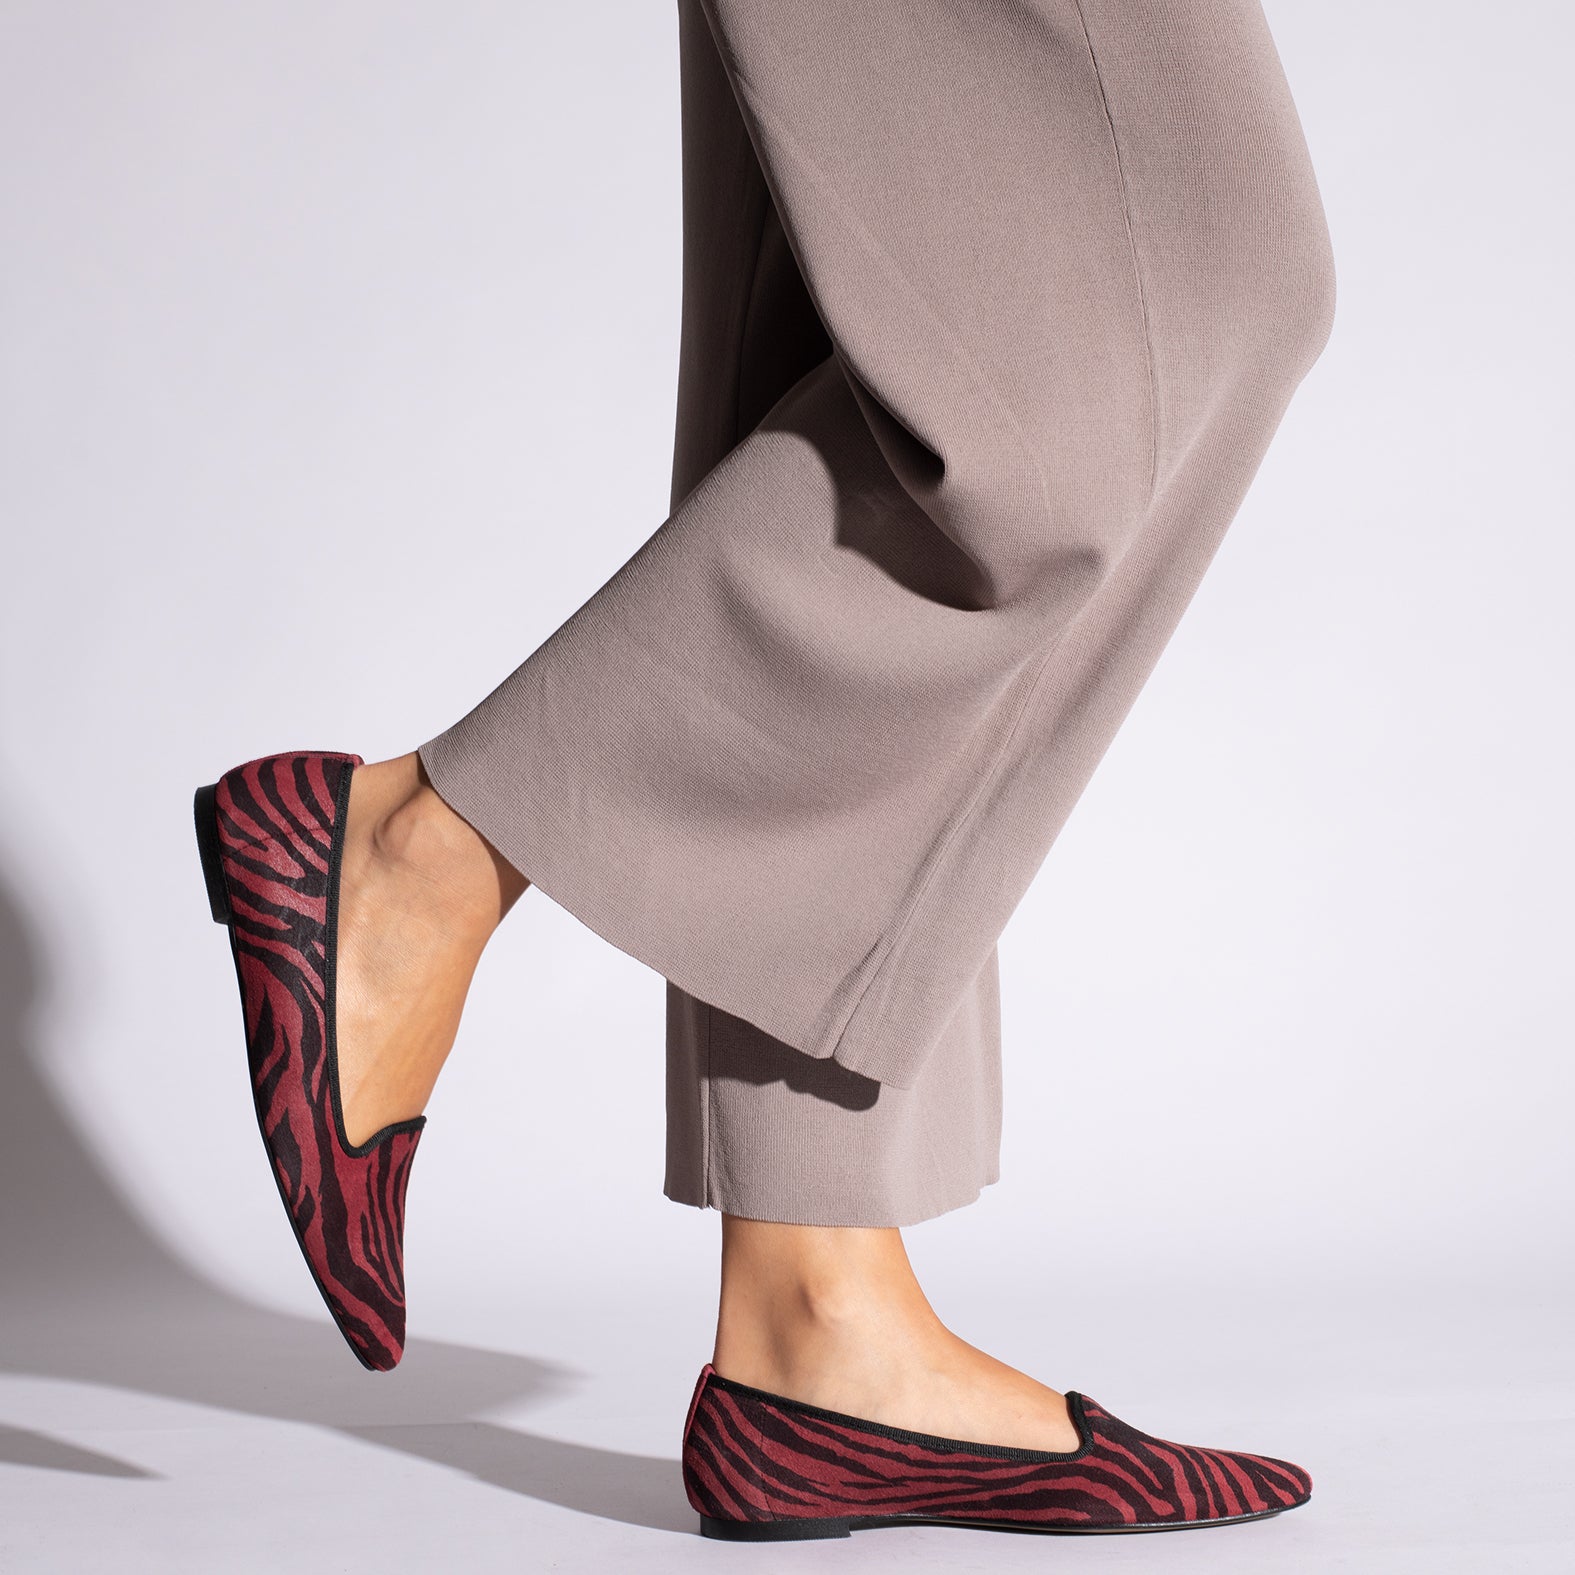 SLIPPER -RED zebra print slipper